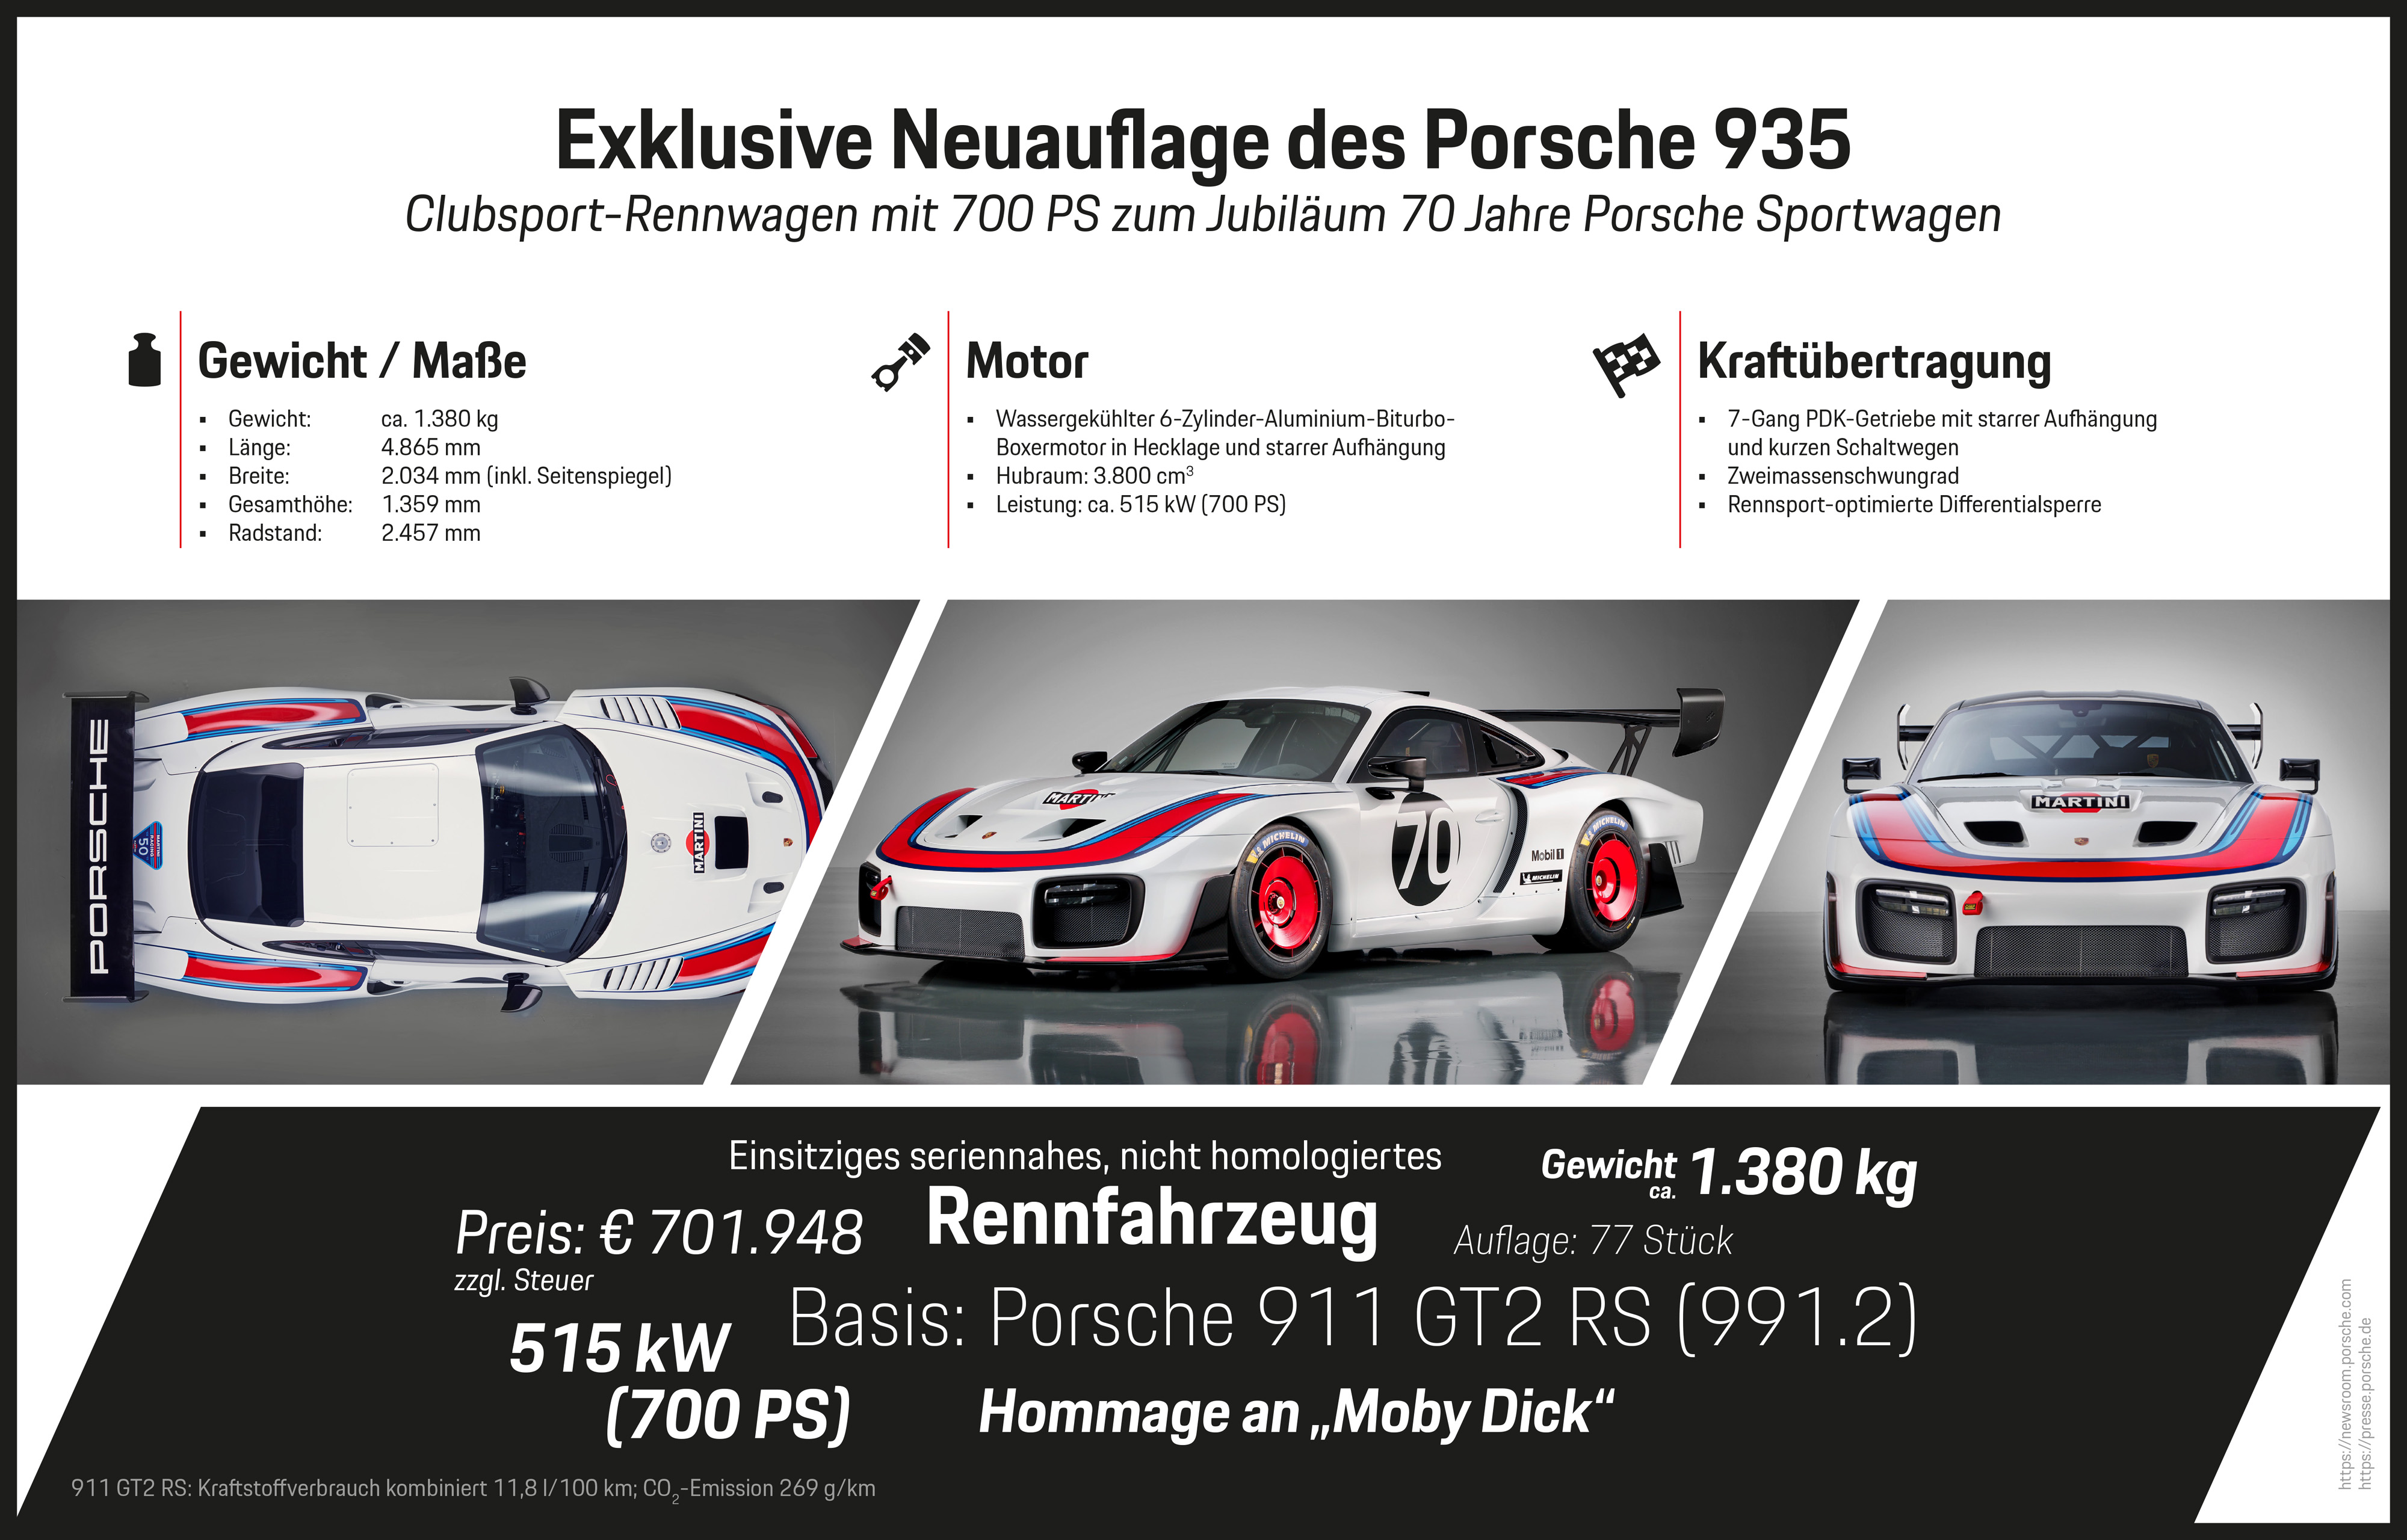 Exklusive Neuauflage des Porsche 935, Infografik, 2018, Porsche AG